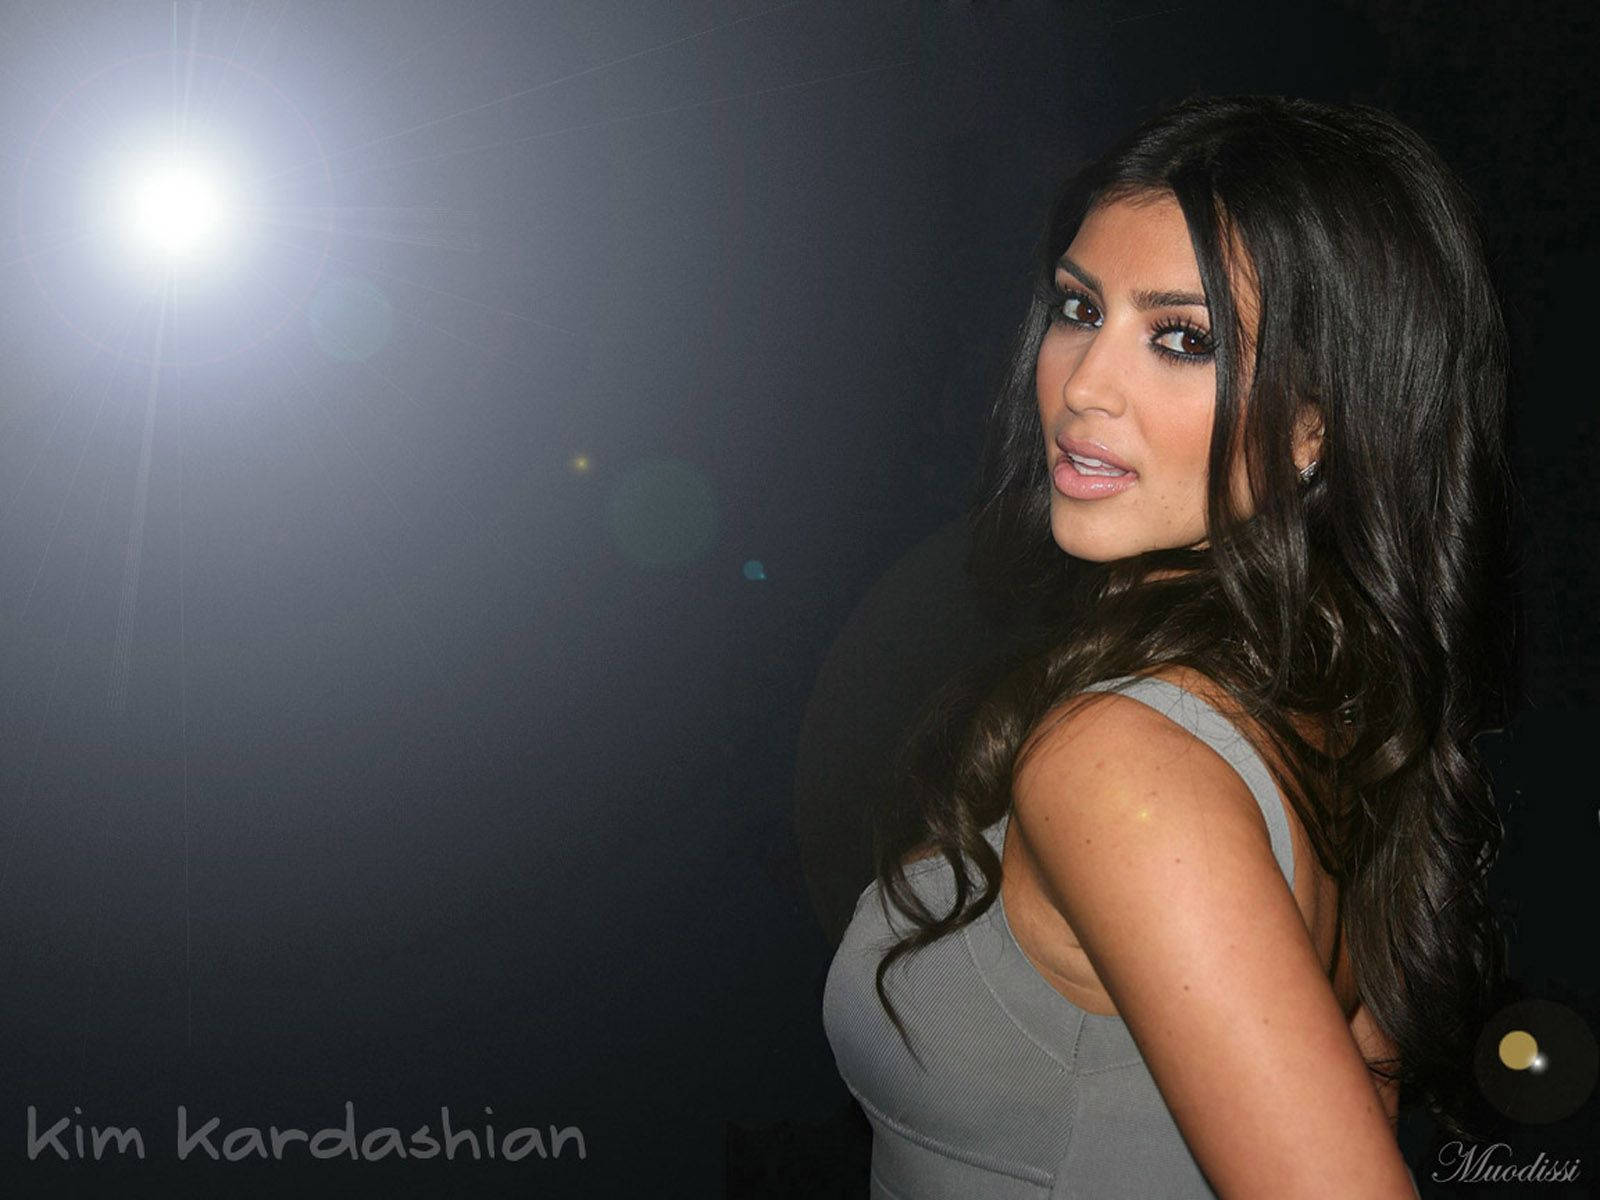 Young Kim Kardashian Portrait Wallpaper